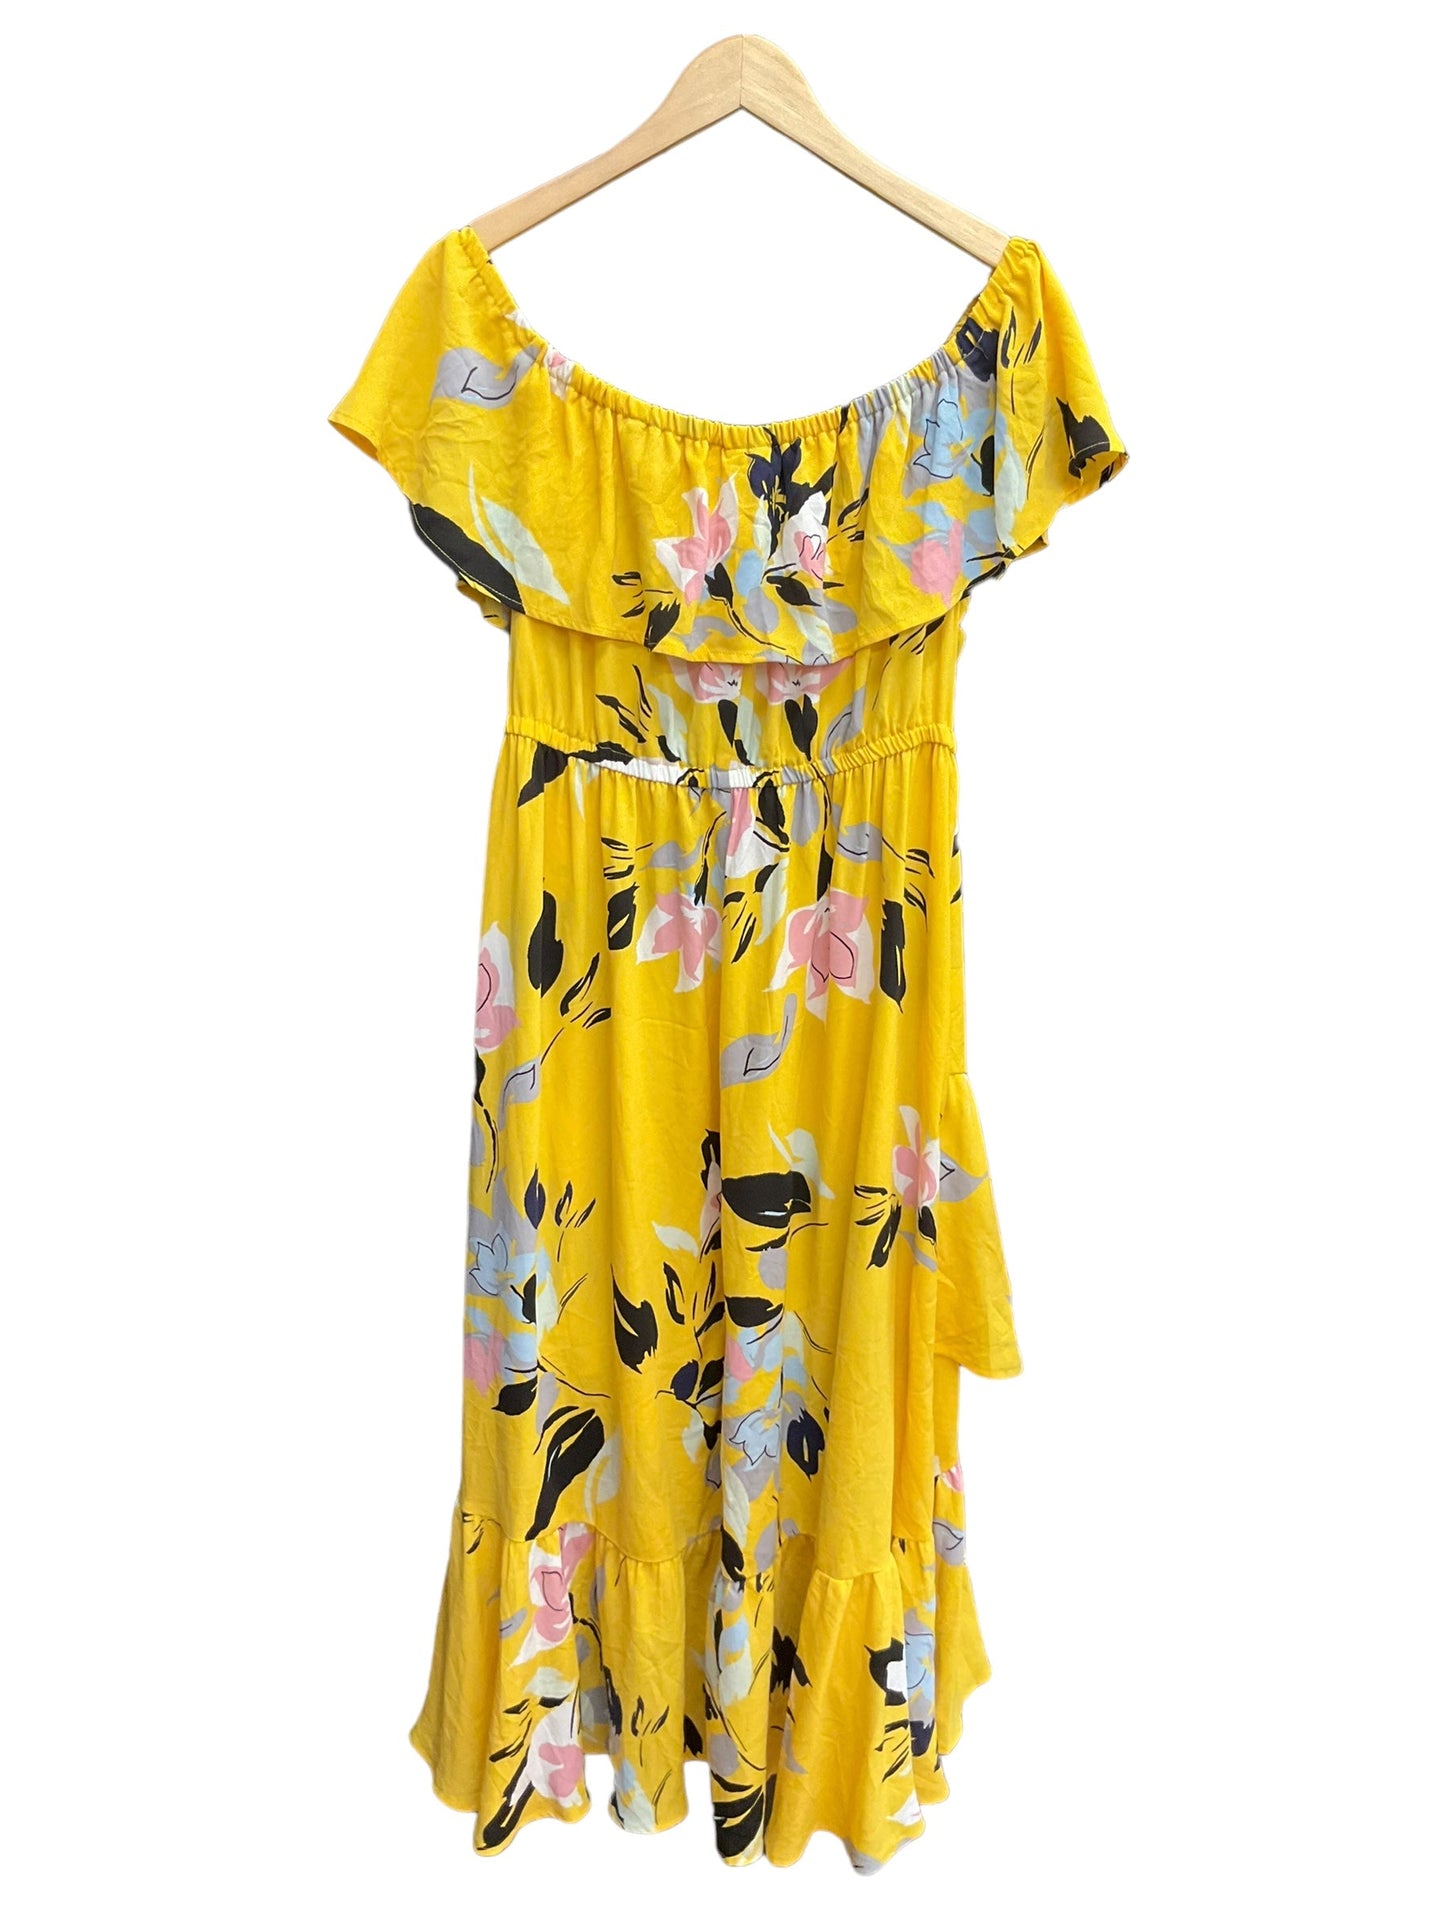 Floral Print Dress Casual Maxi Lane Bryant, Size Xl